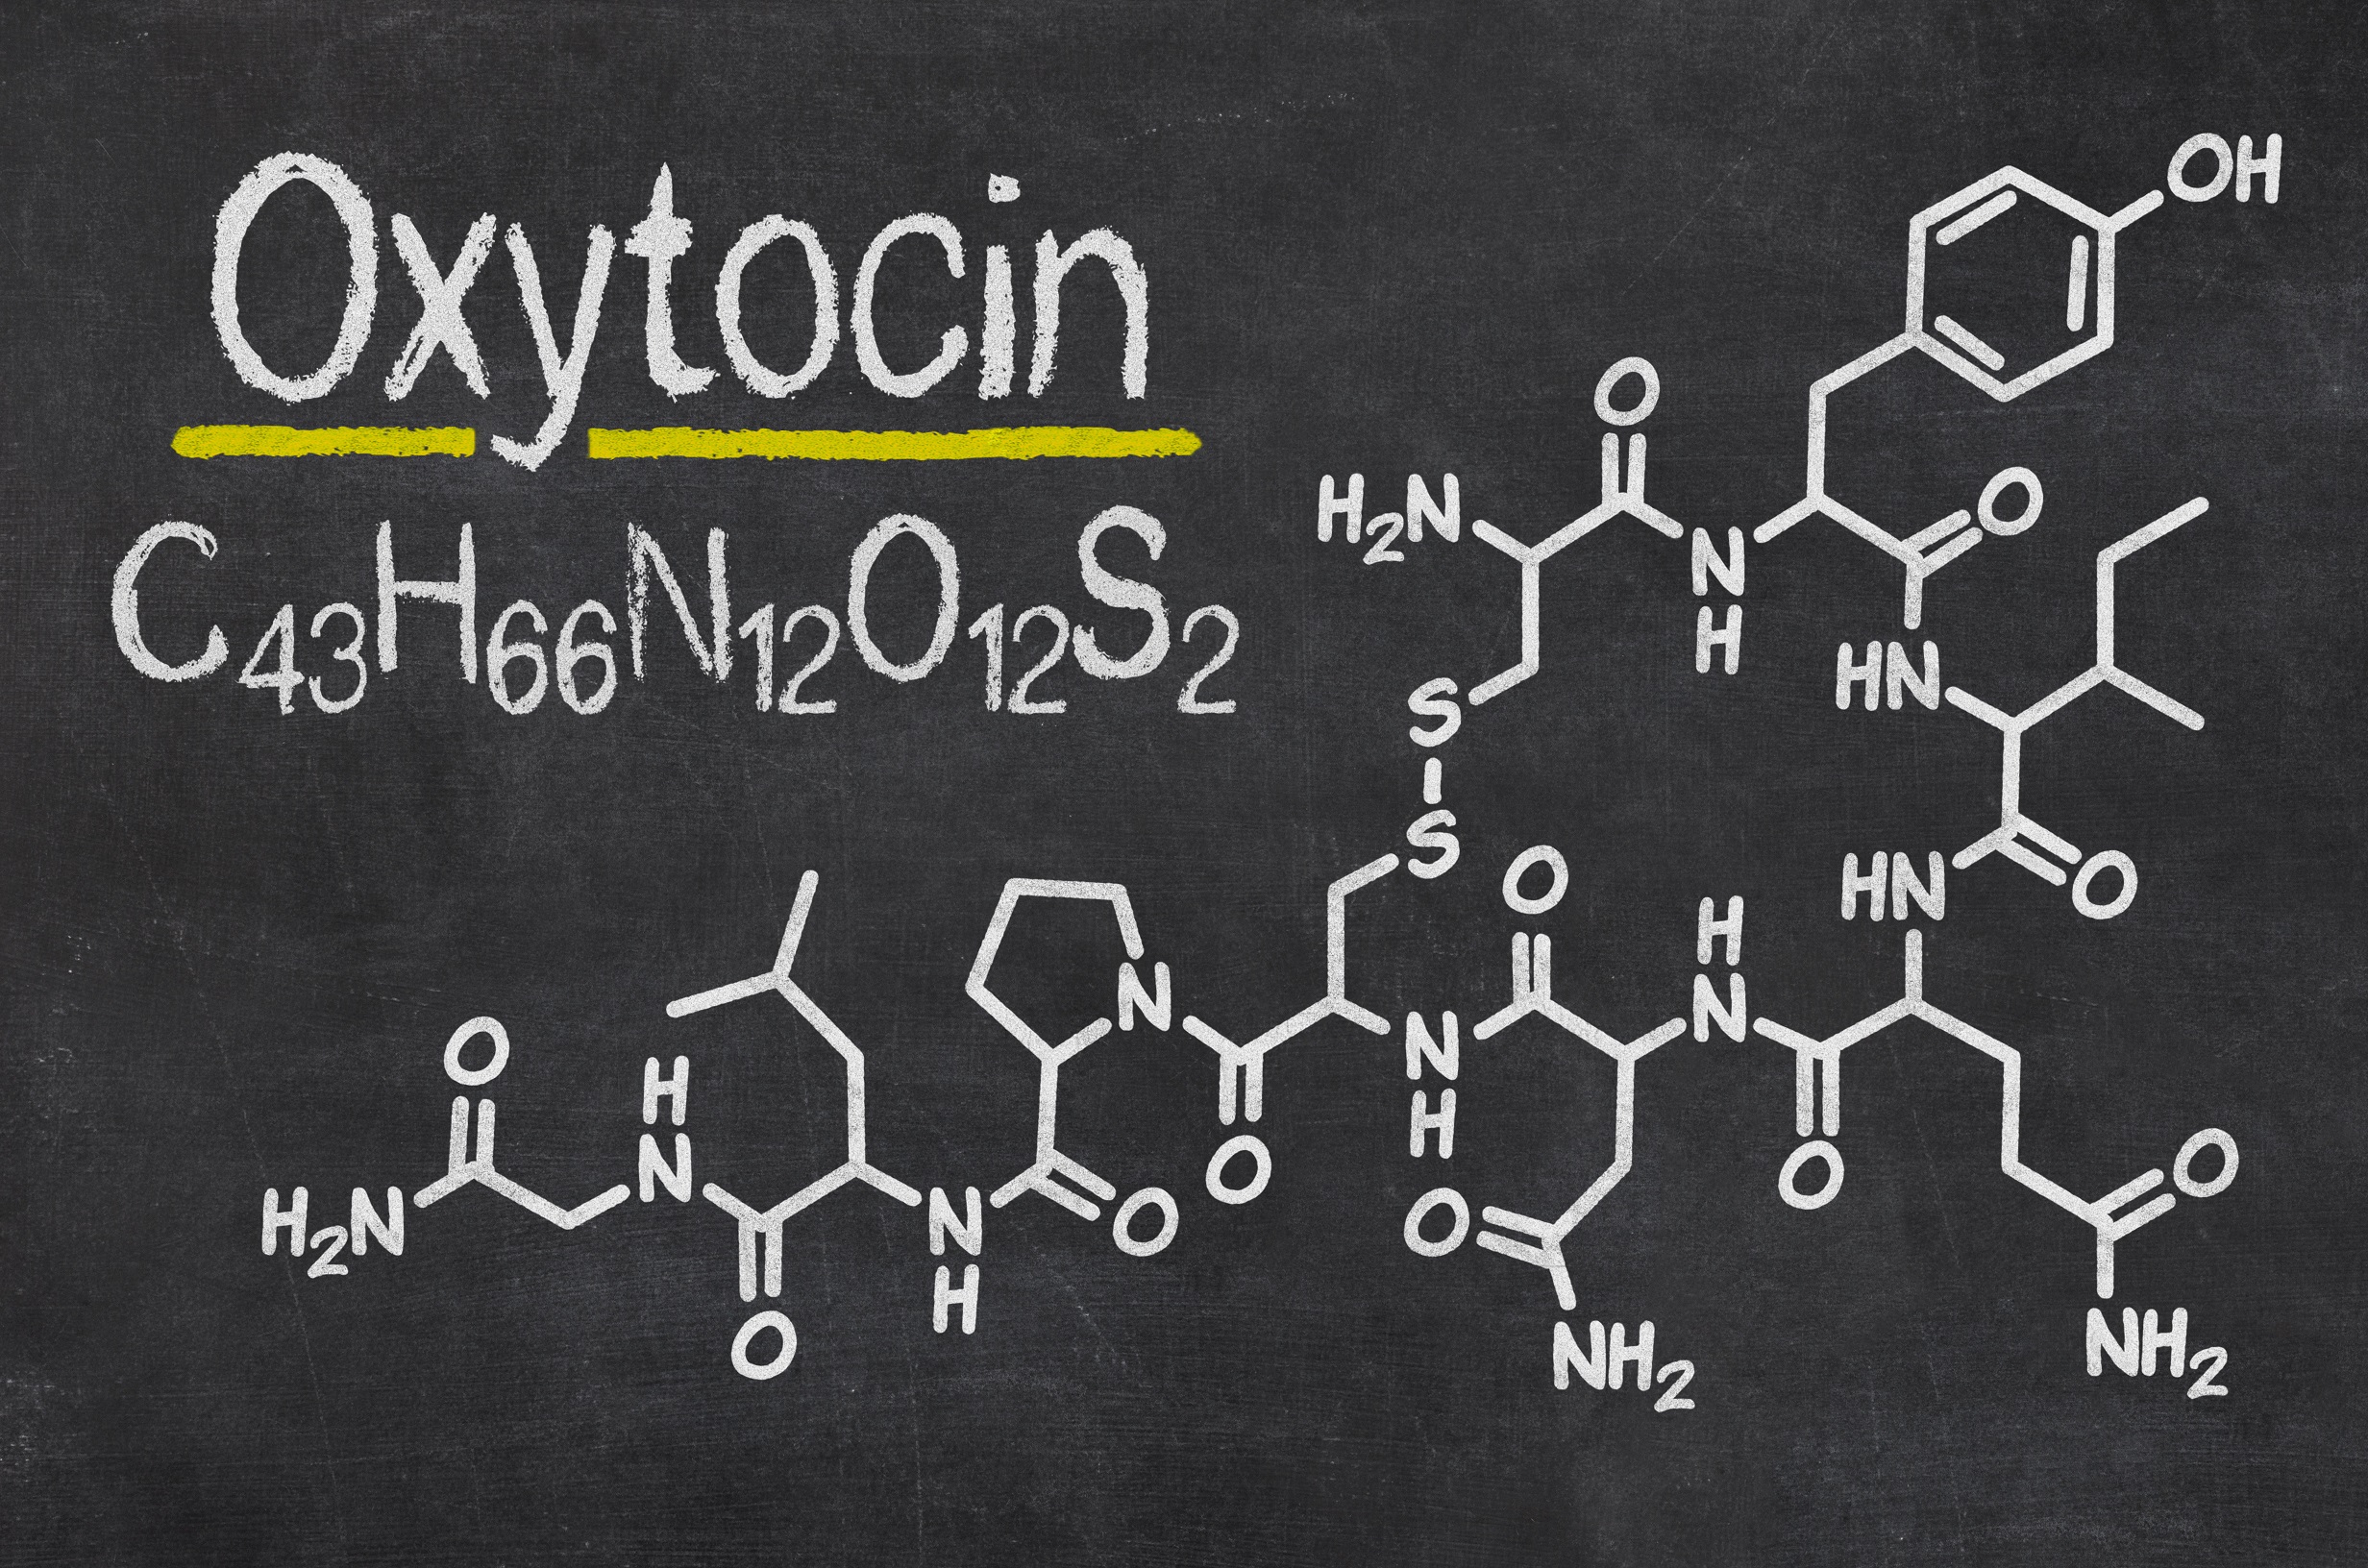 Oxytocin and Pregnancy